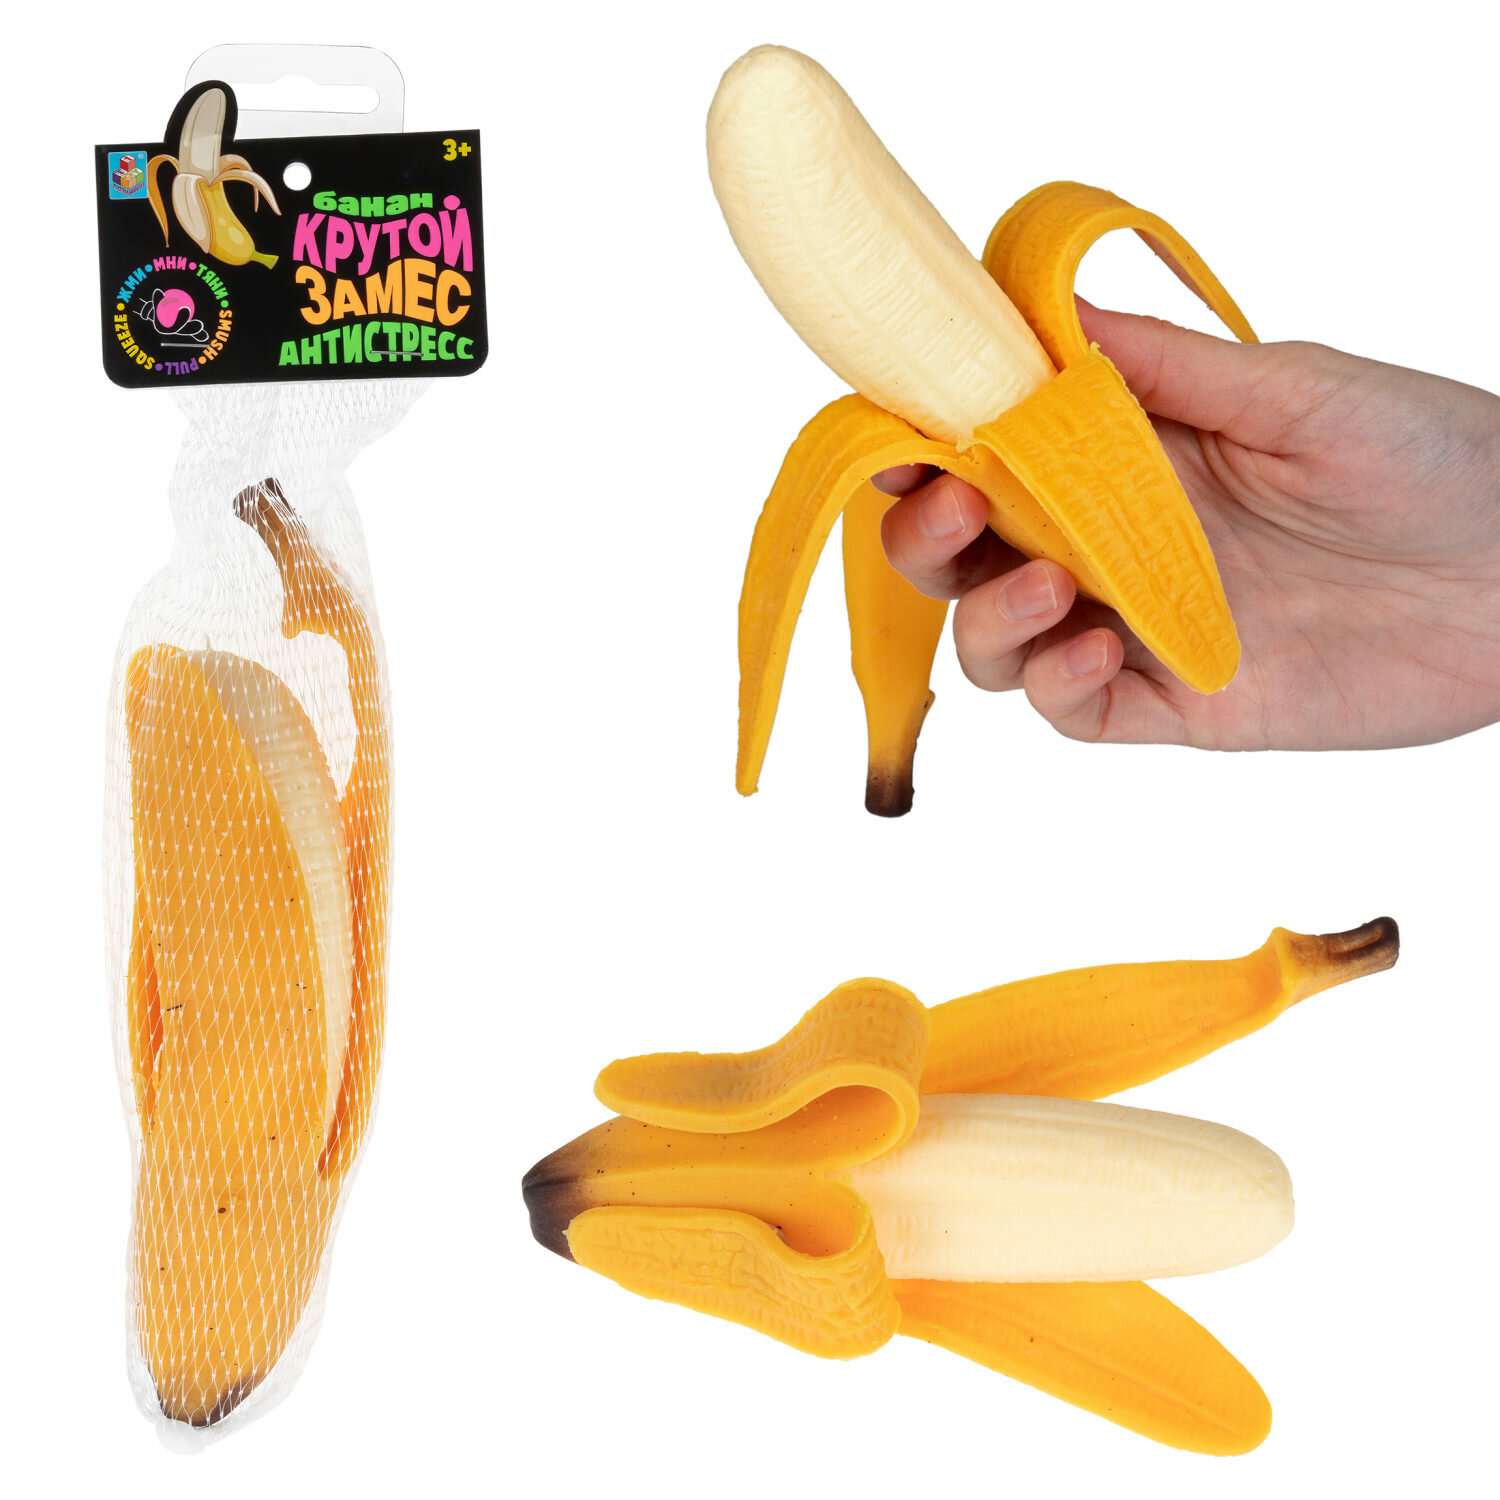 Игрушка-антистресс 1toy Крутой замес очищенный банан, 17*5*4см, сетка с хедером